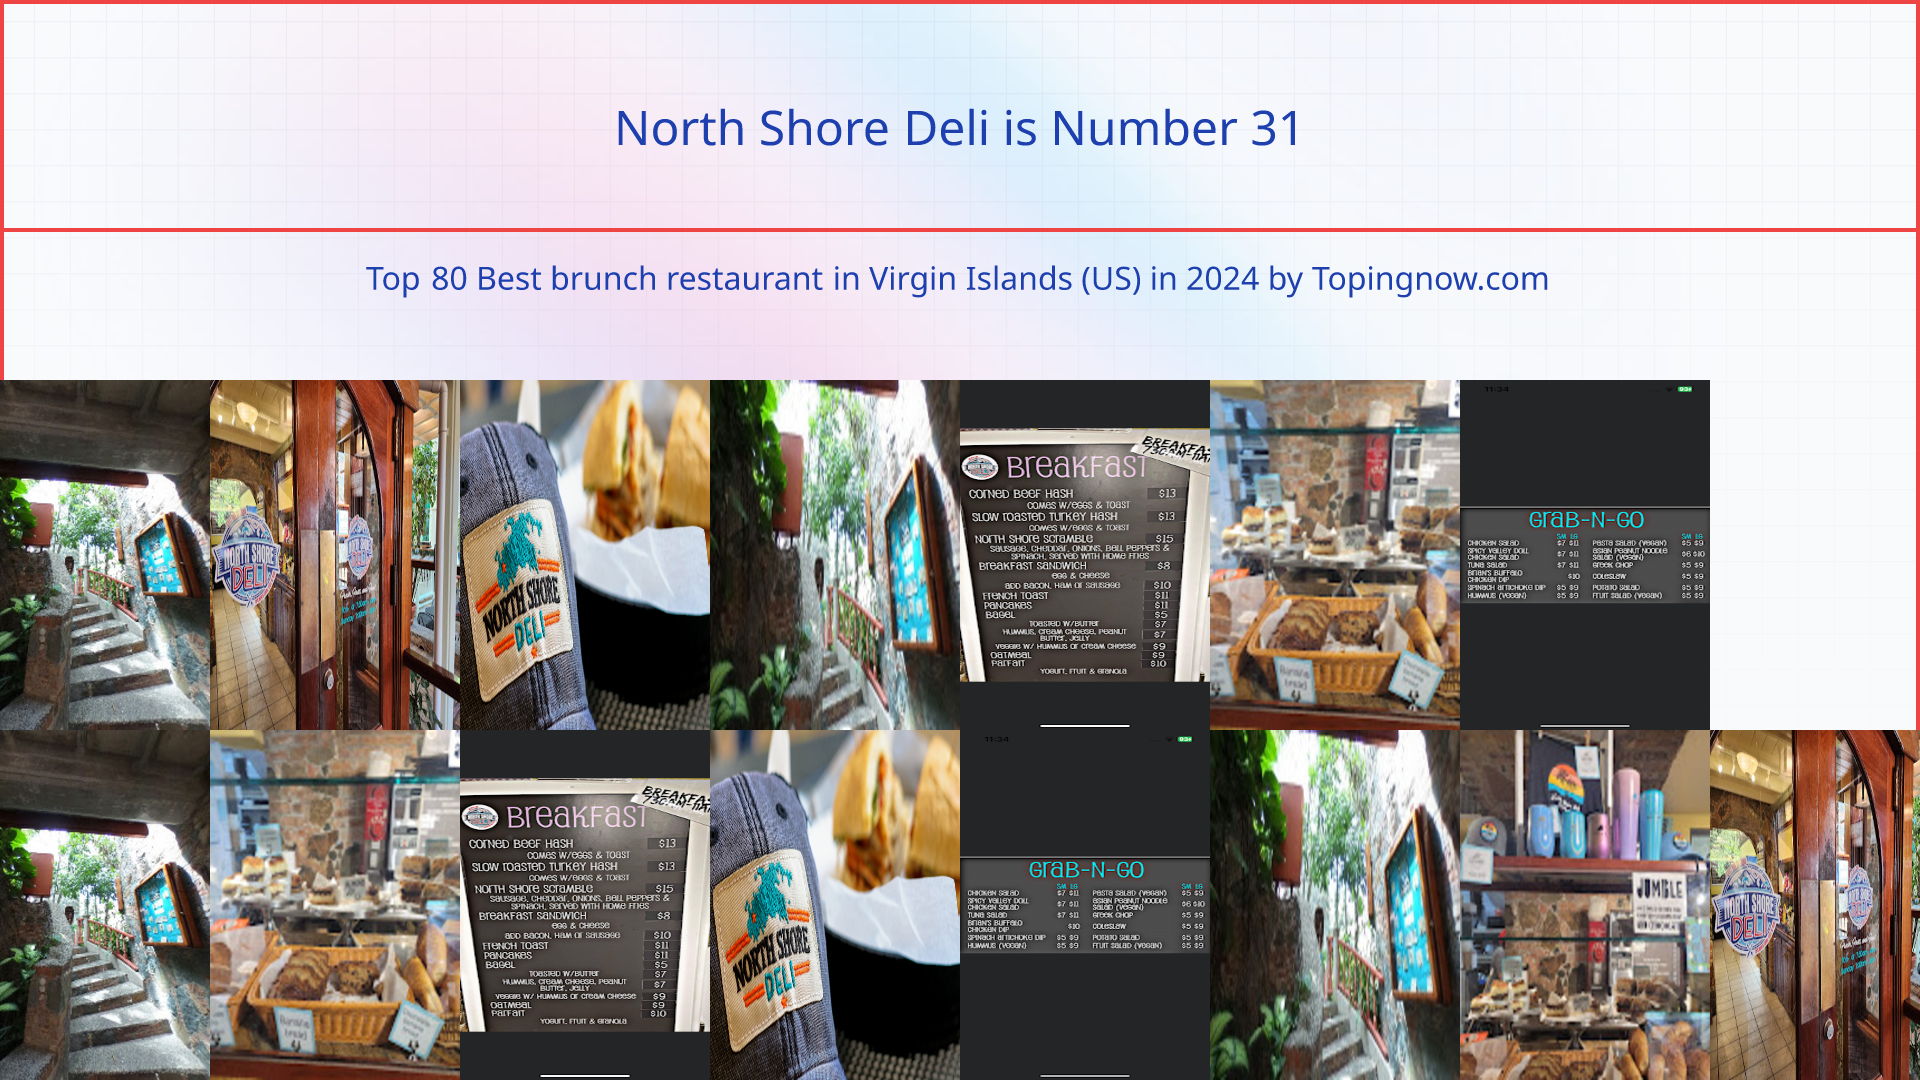 North Shore Deli: Top 80 Best brunch restaurant in Virgin Islands (US) in 2024